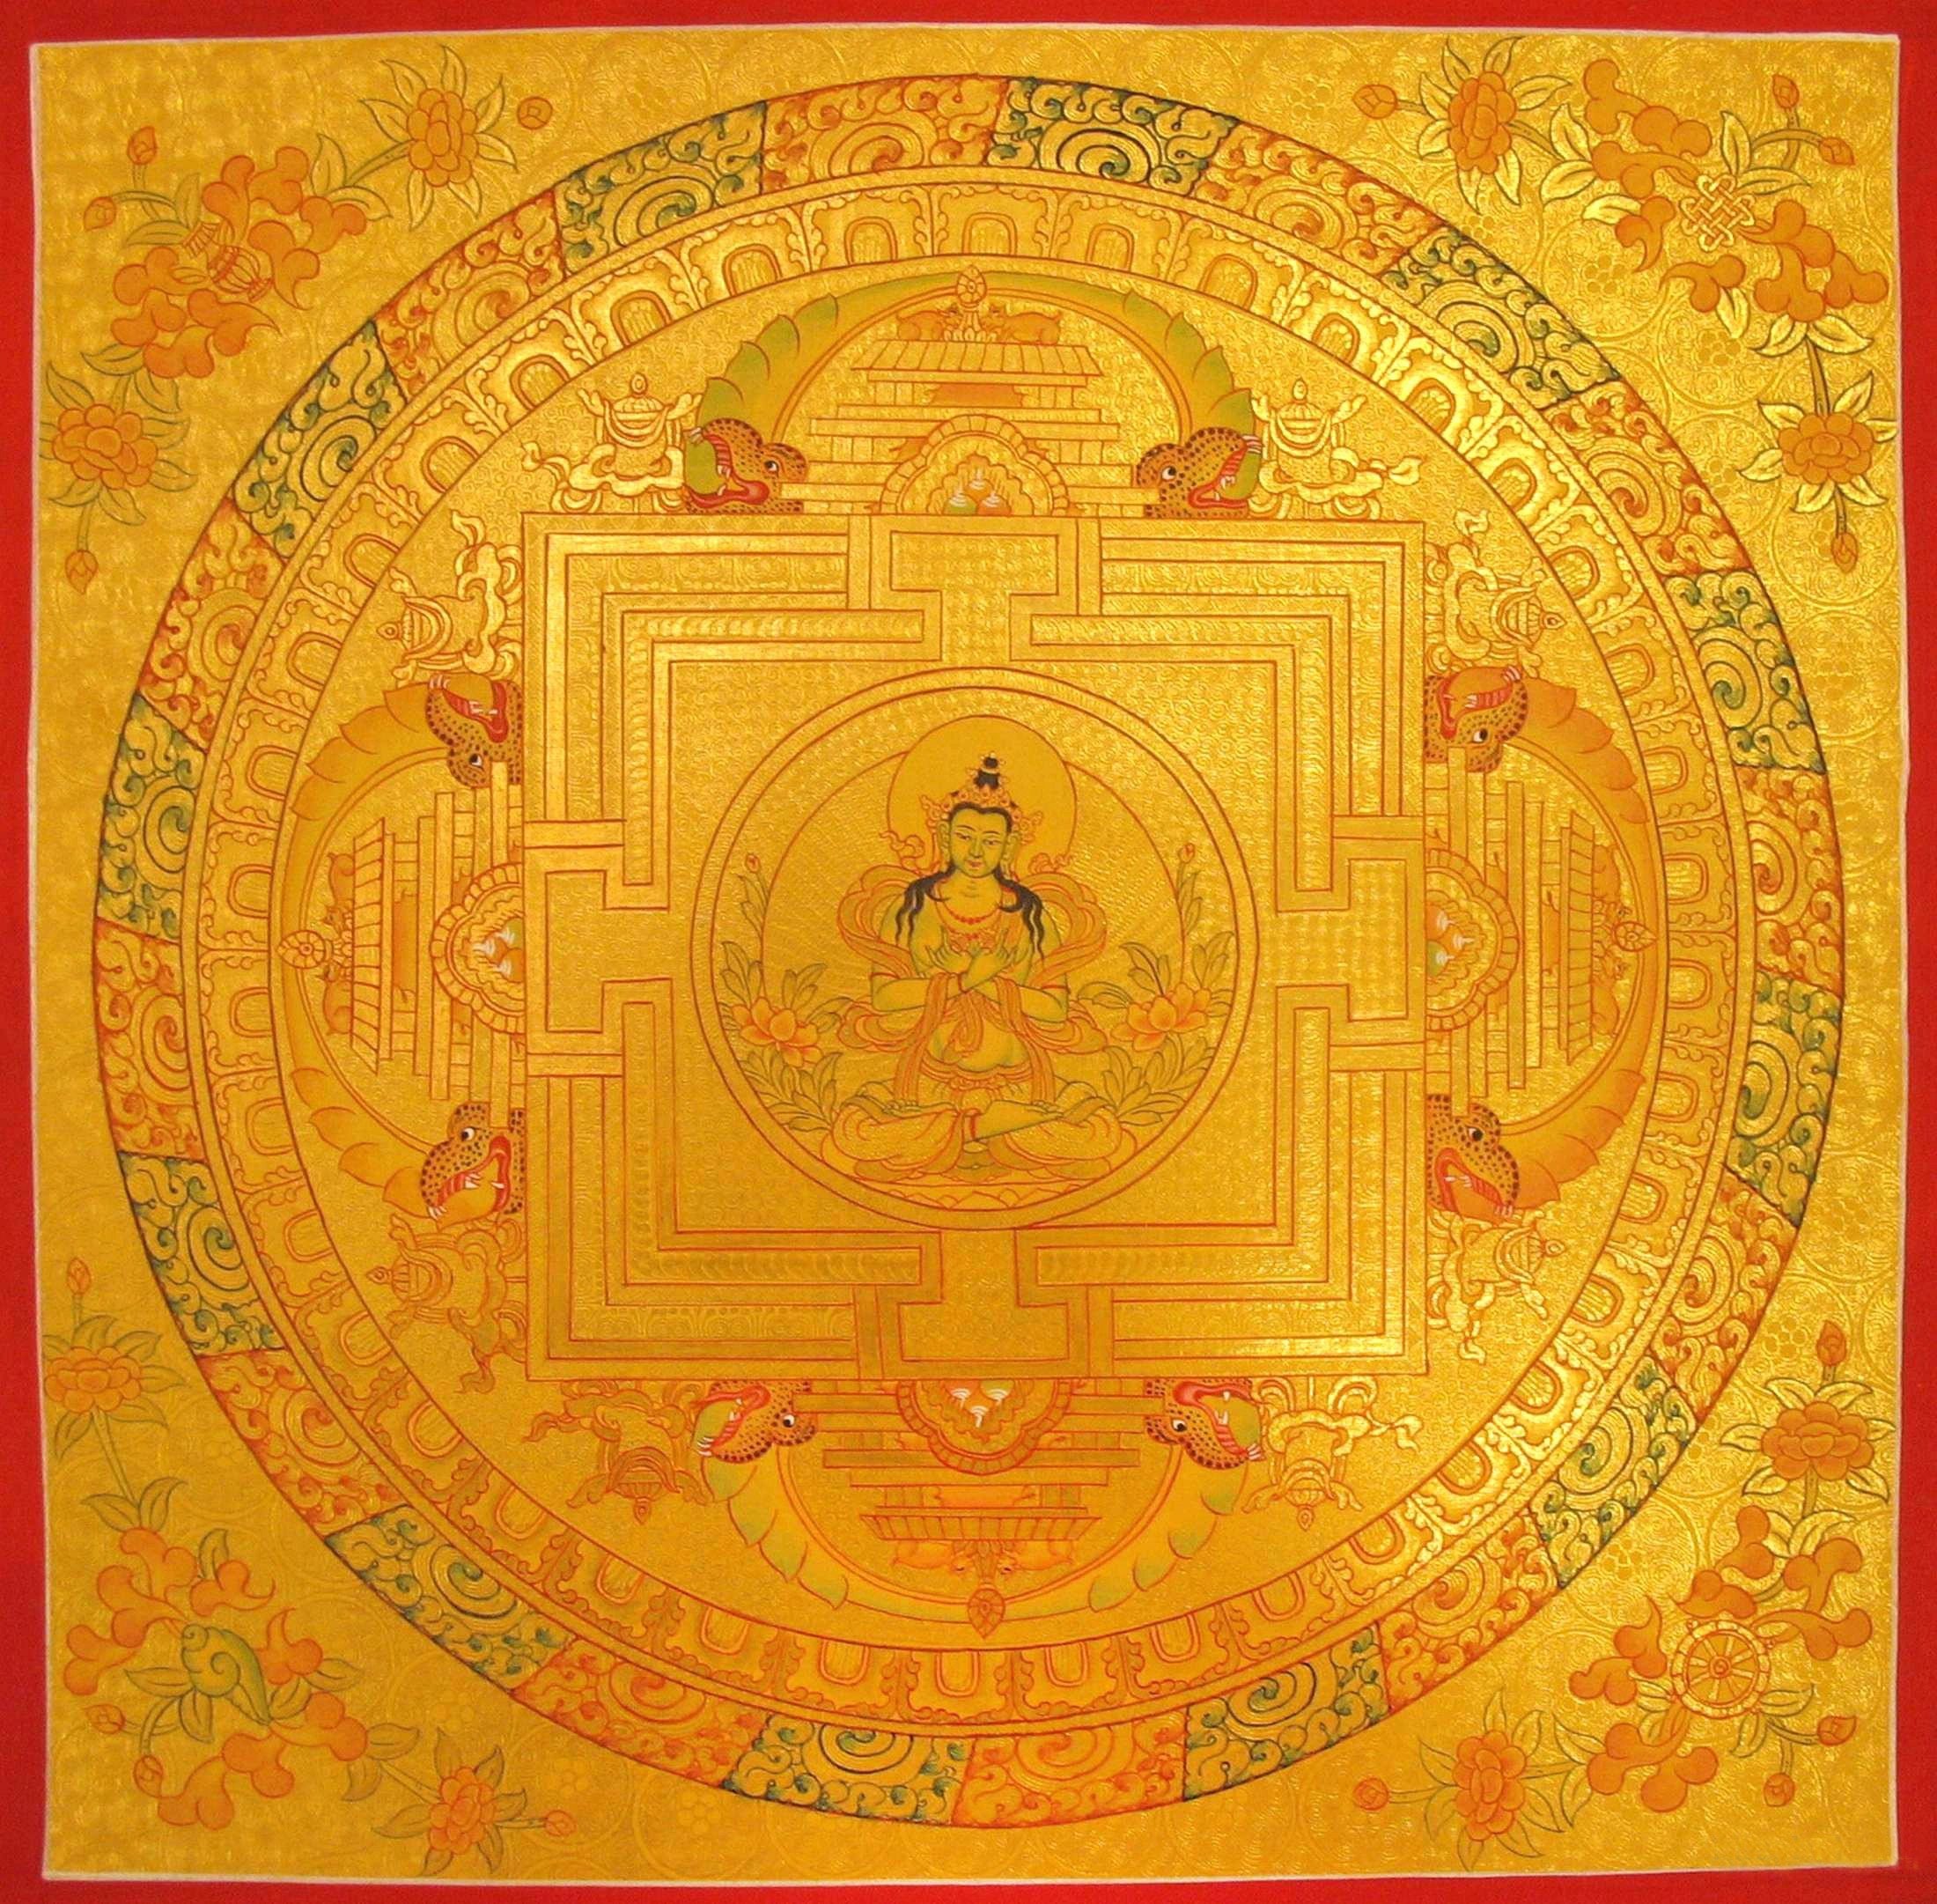 The 
Vajra Bhairava Image